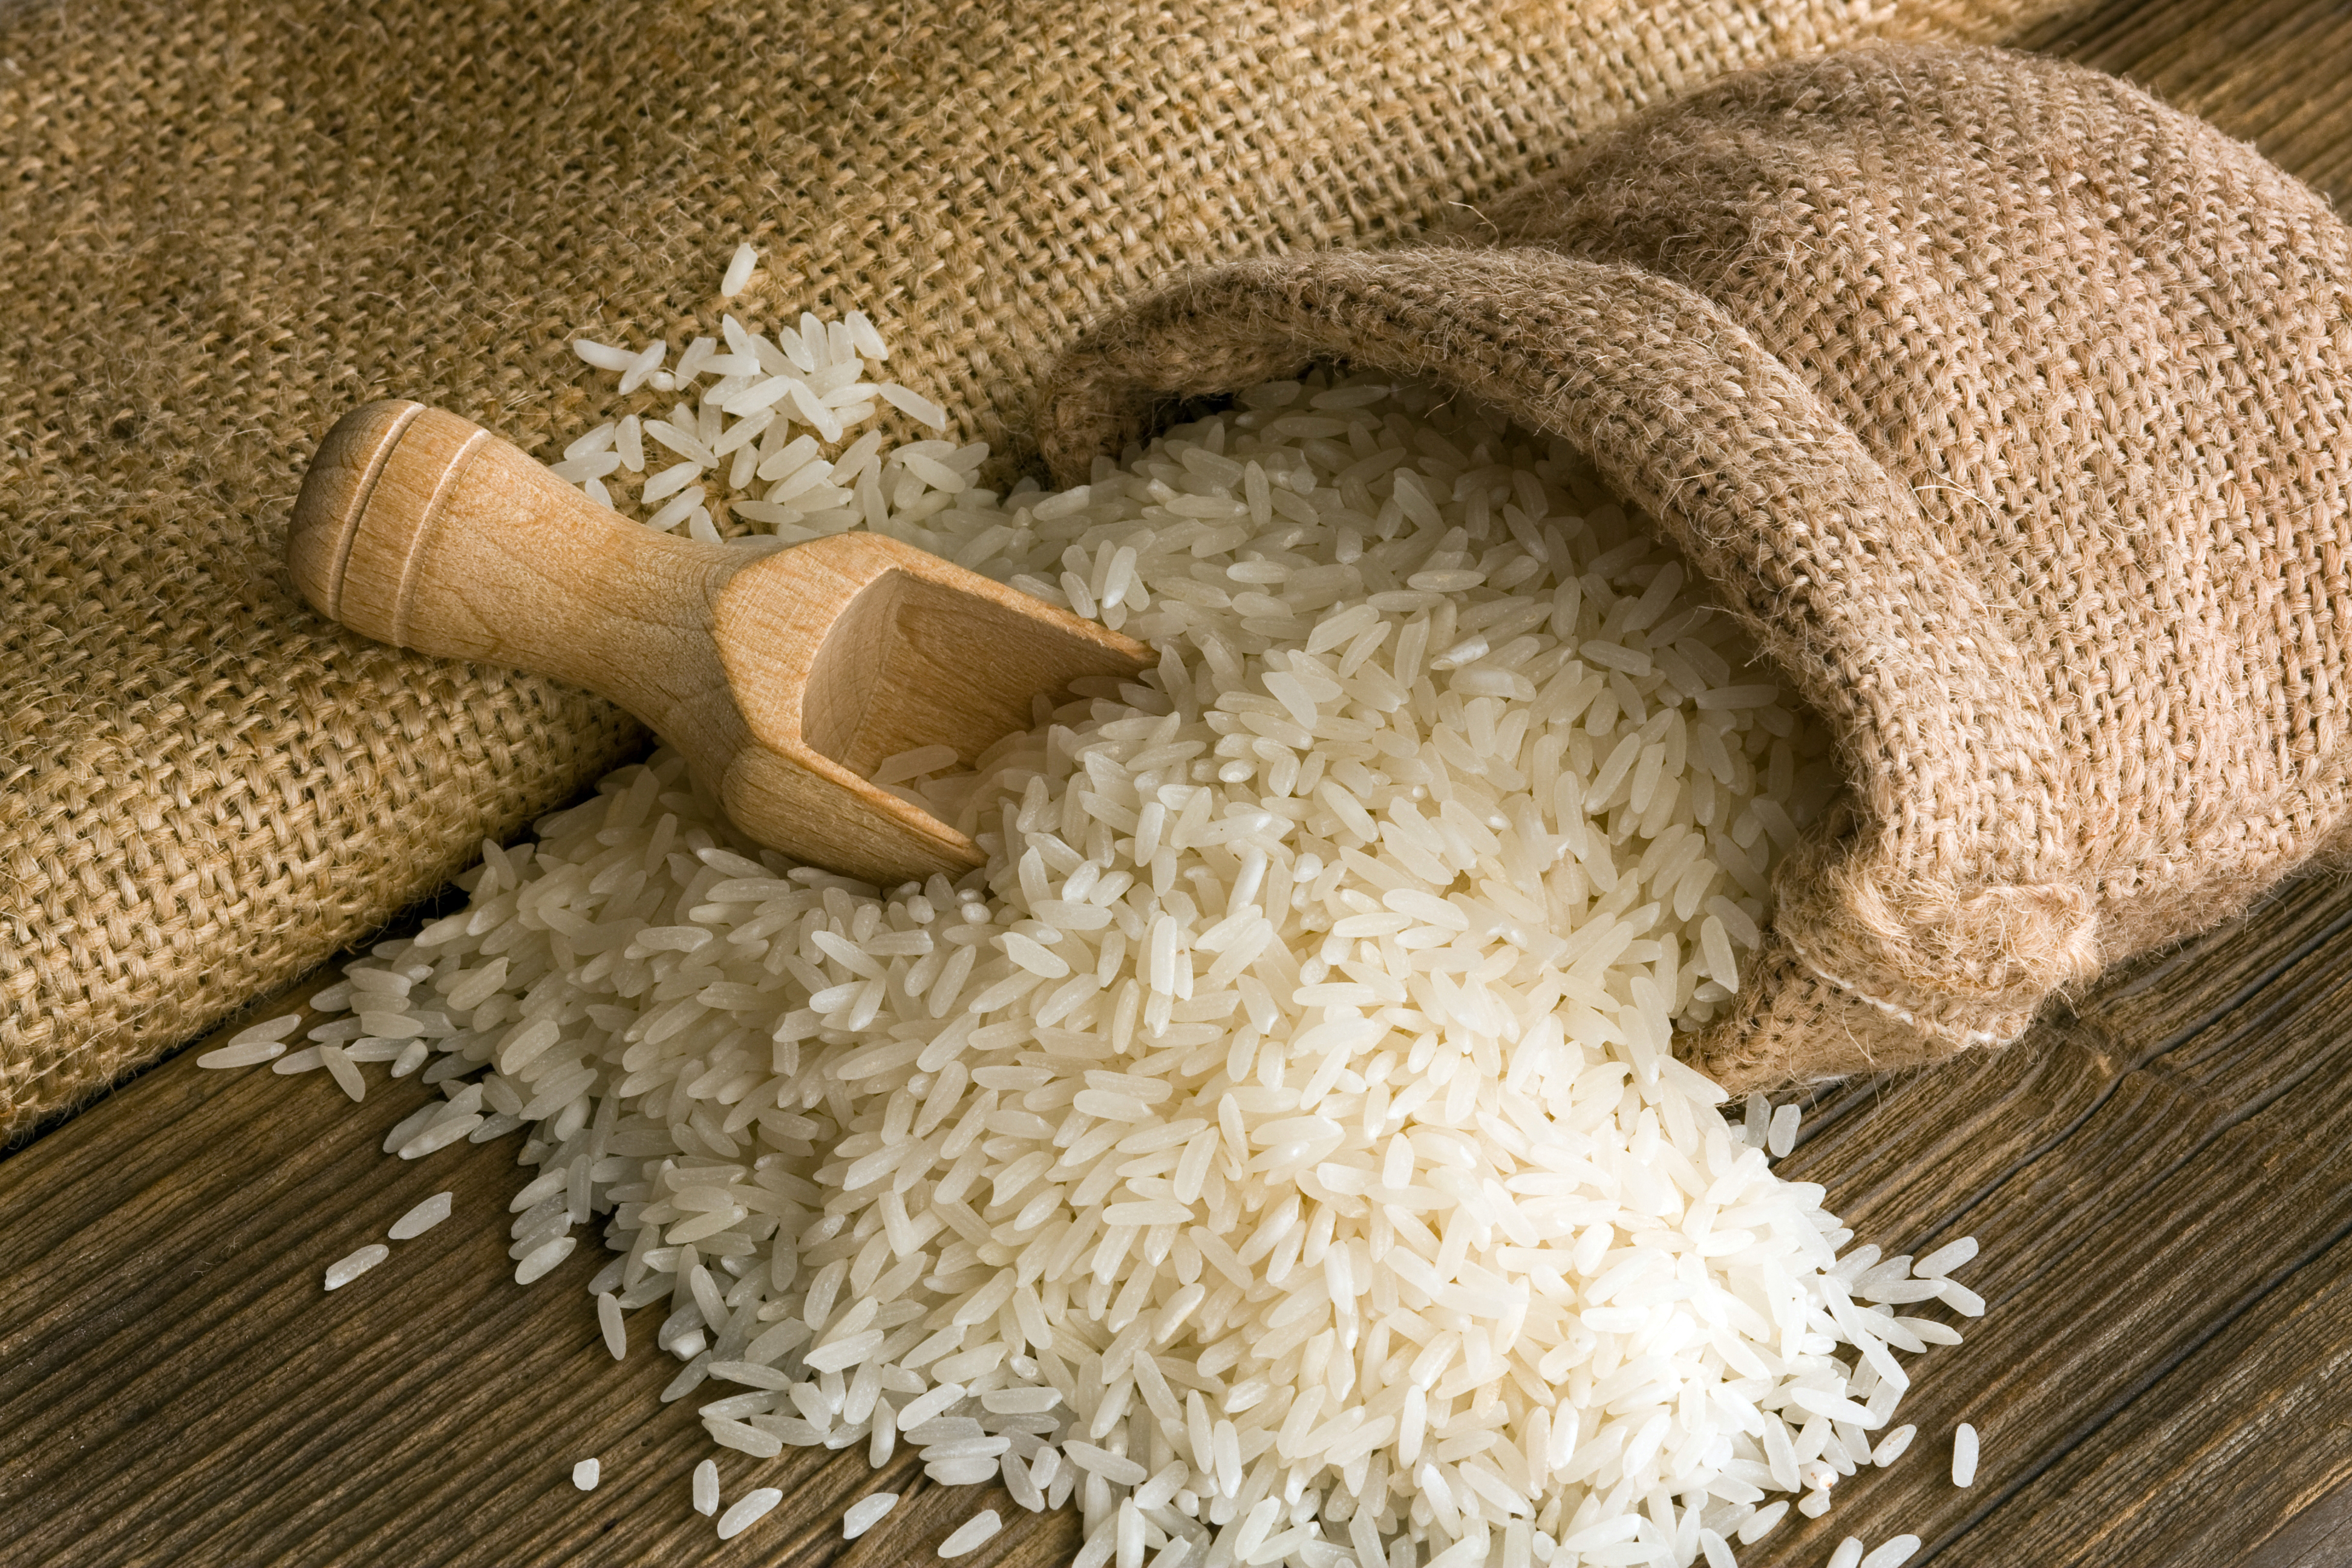 Accusé de racisme, le riz Uncle Ben's devient simplement le riz